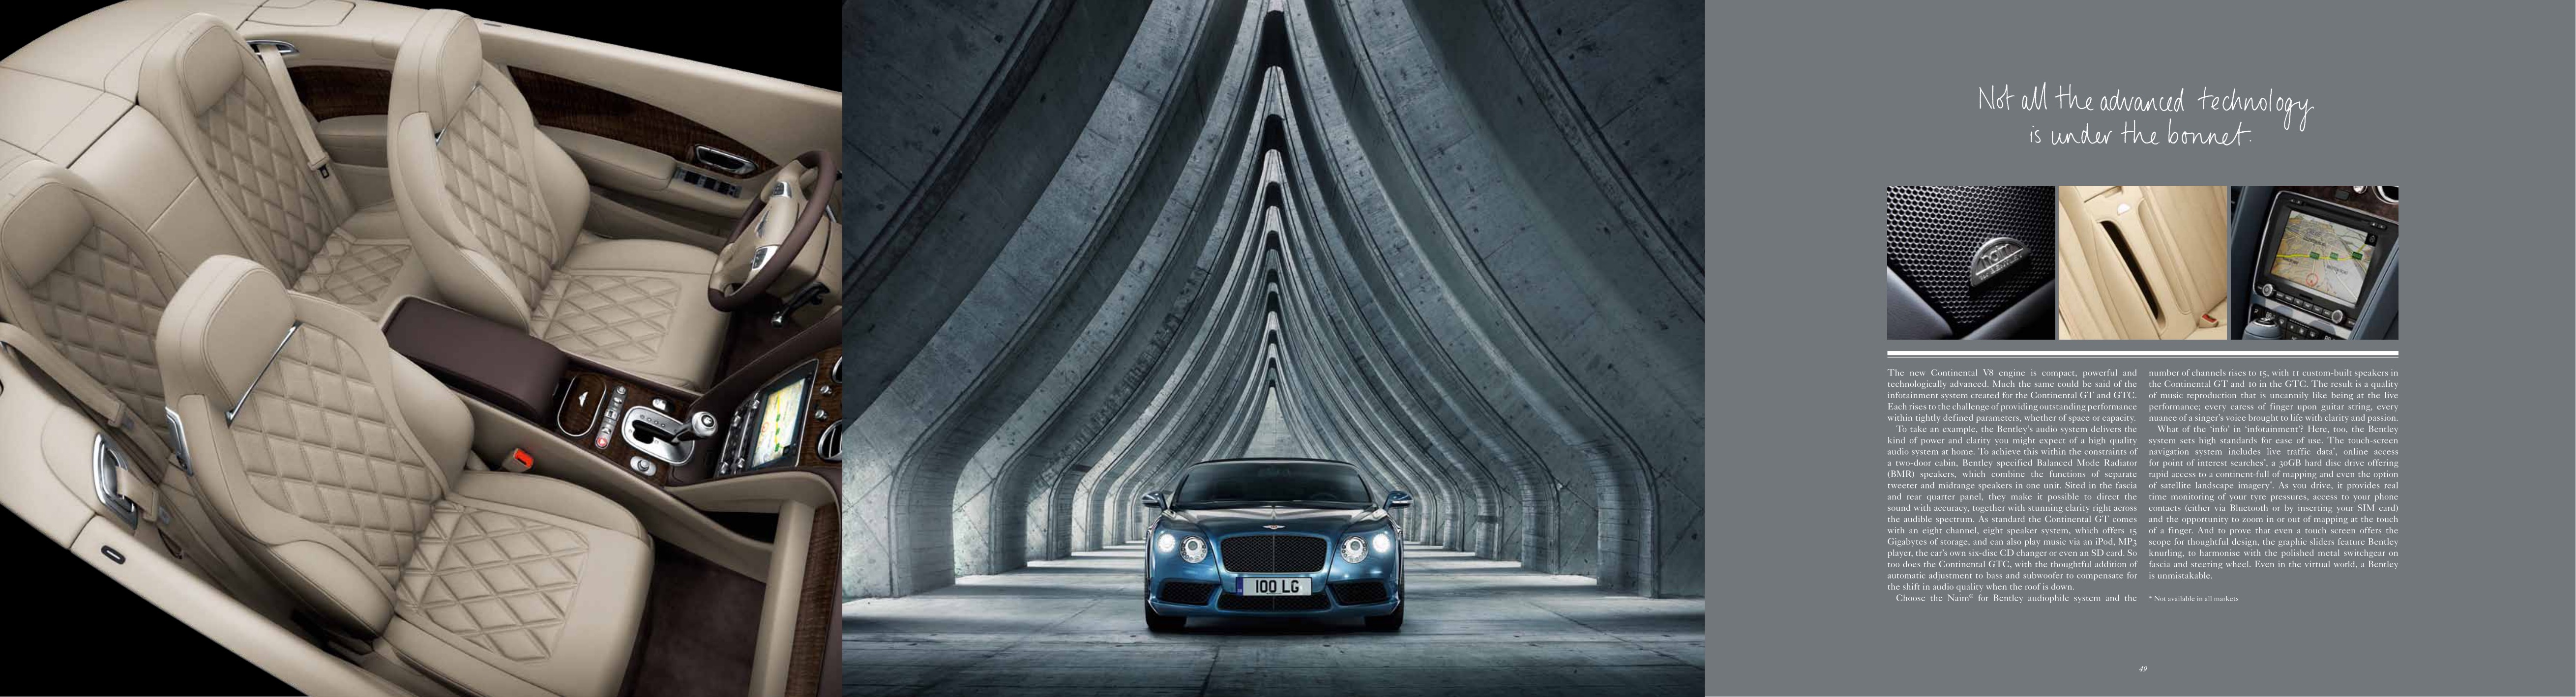 2012 Bentley Continental Brochure Page 18